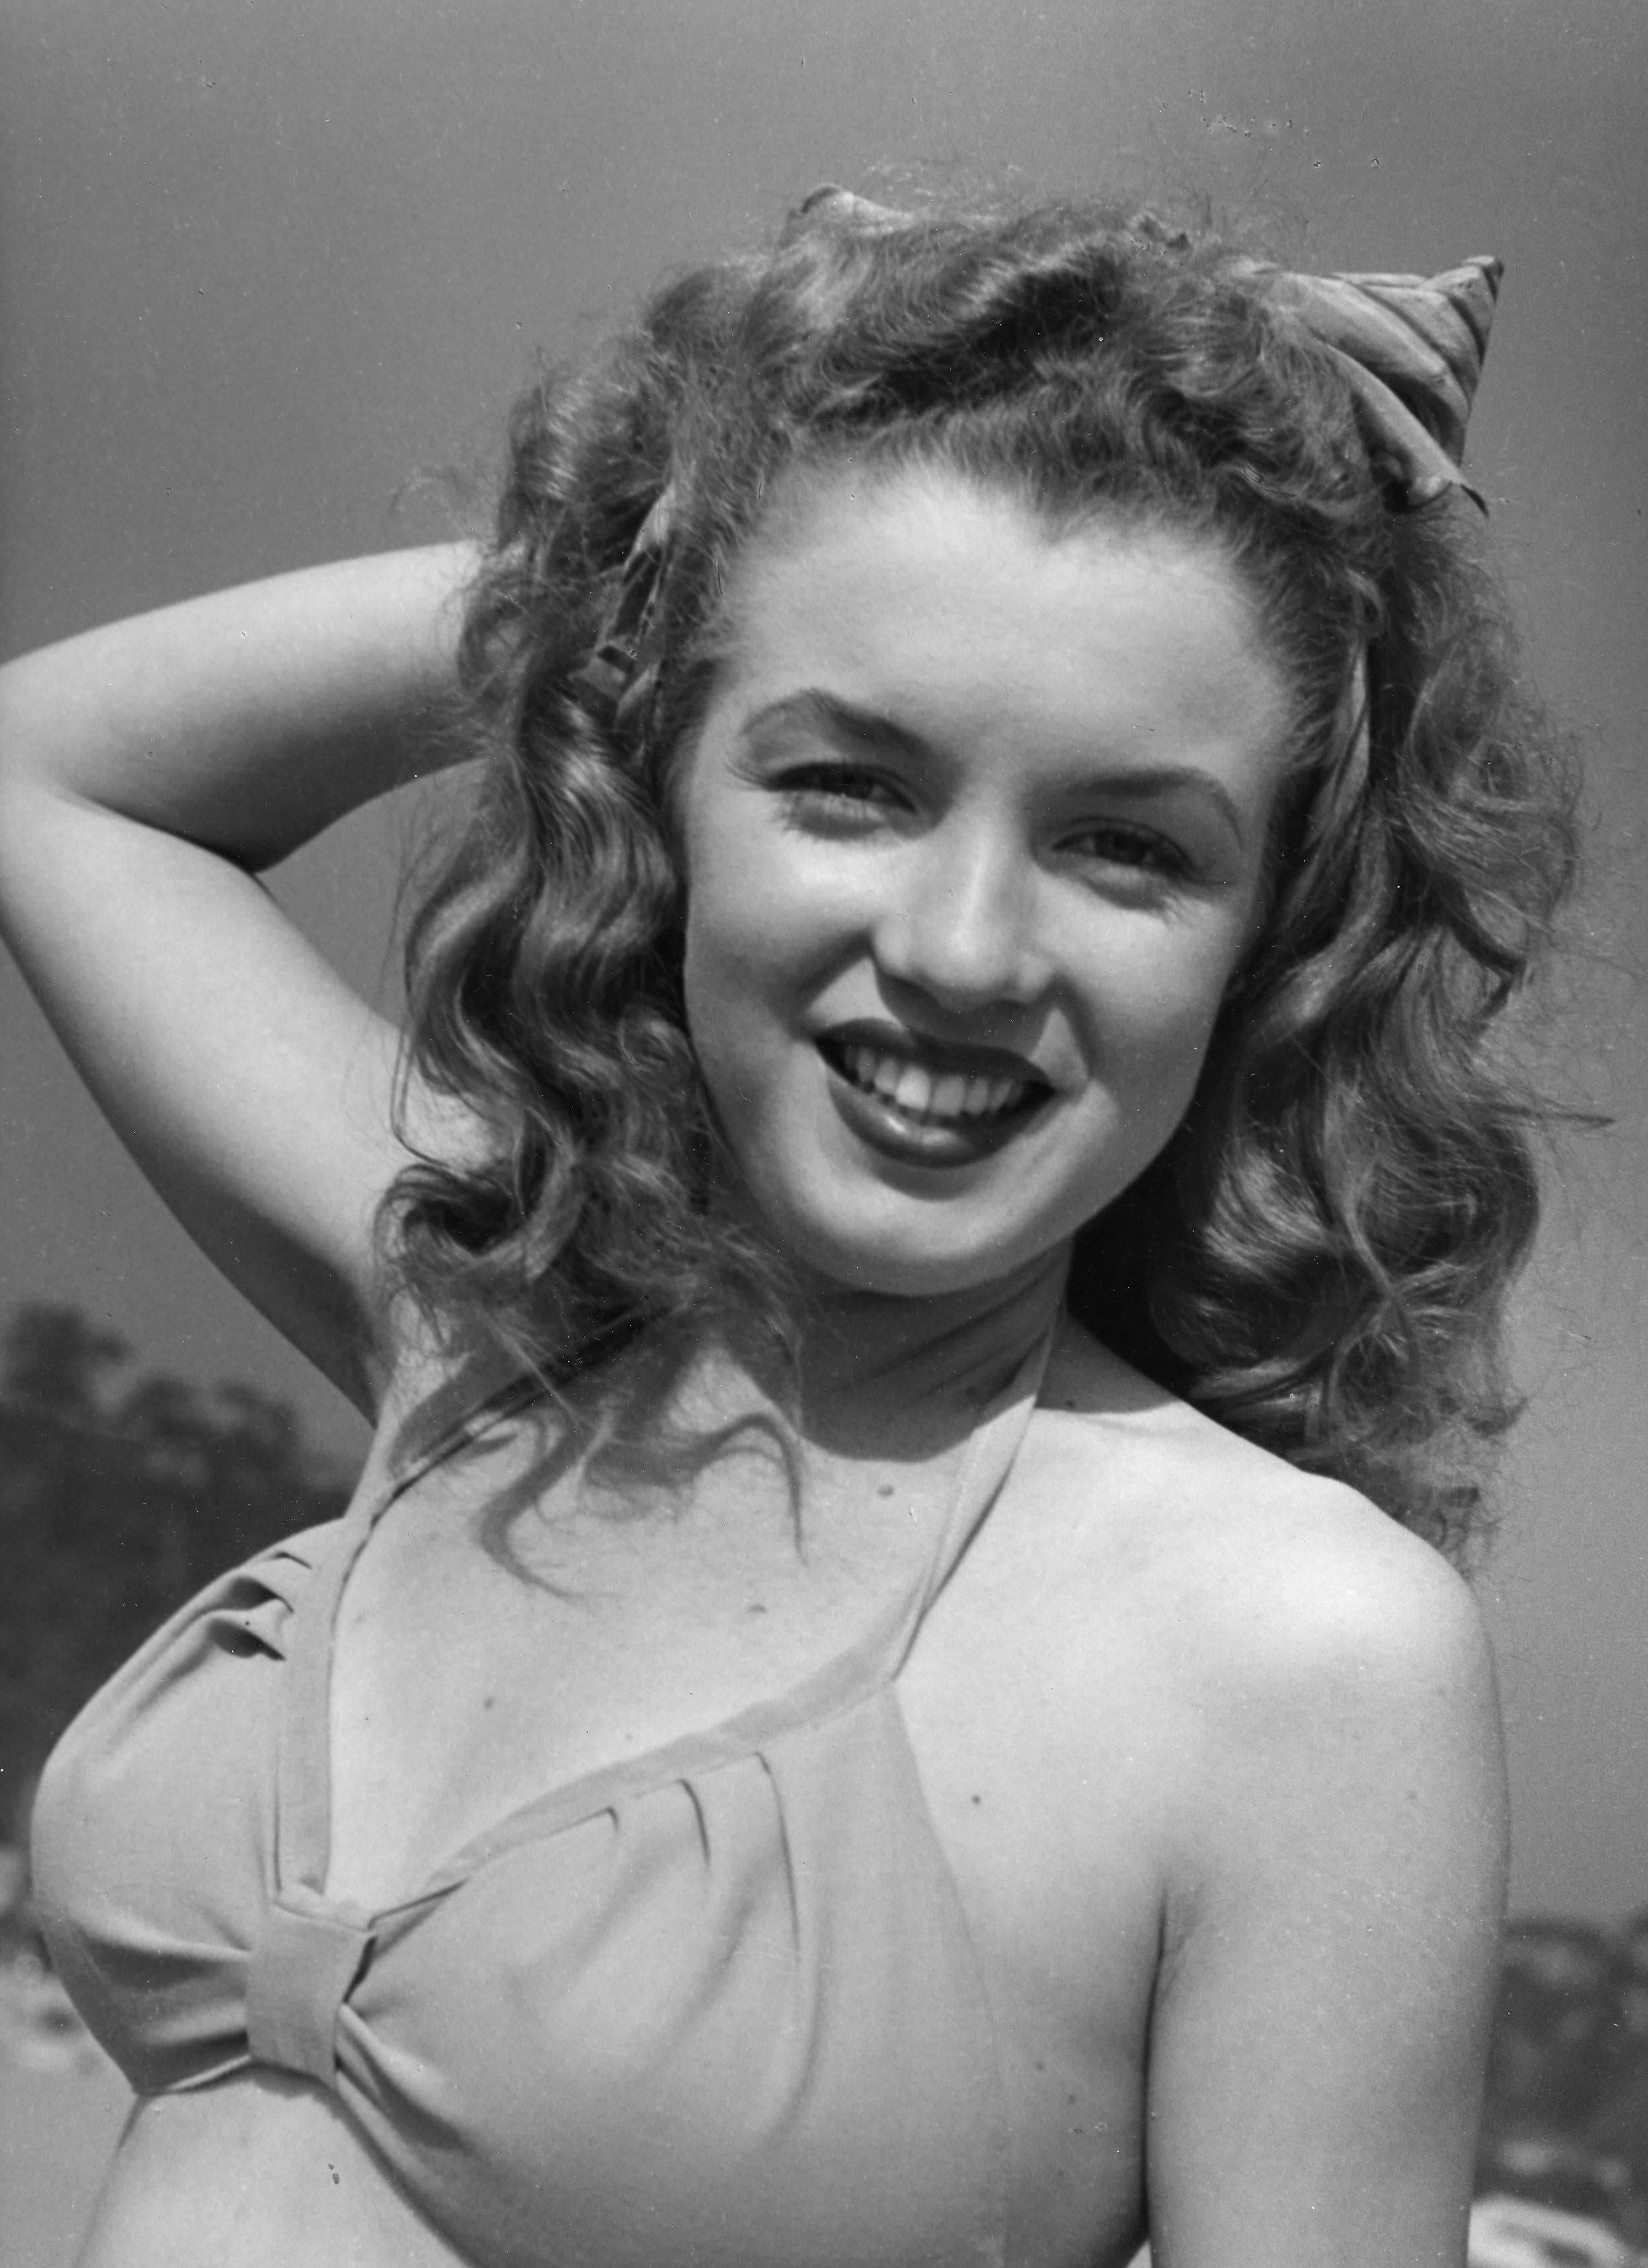 Portrait Photograph Andre de Dienes - Jeune Marilyn Monroe au soleil - Photographie originale surdimensionnée vintage